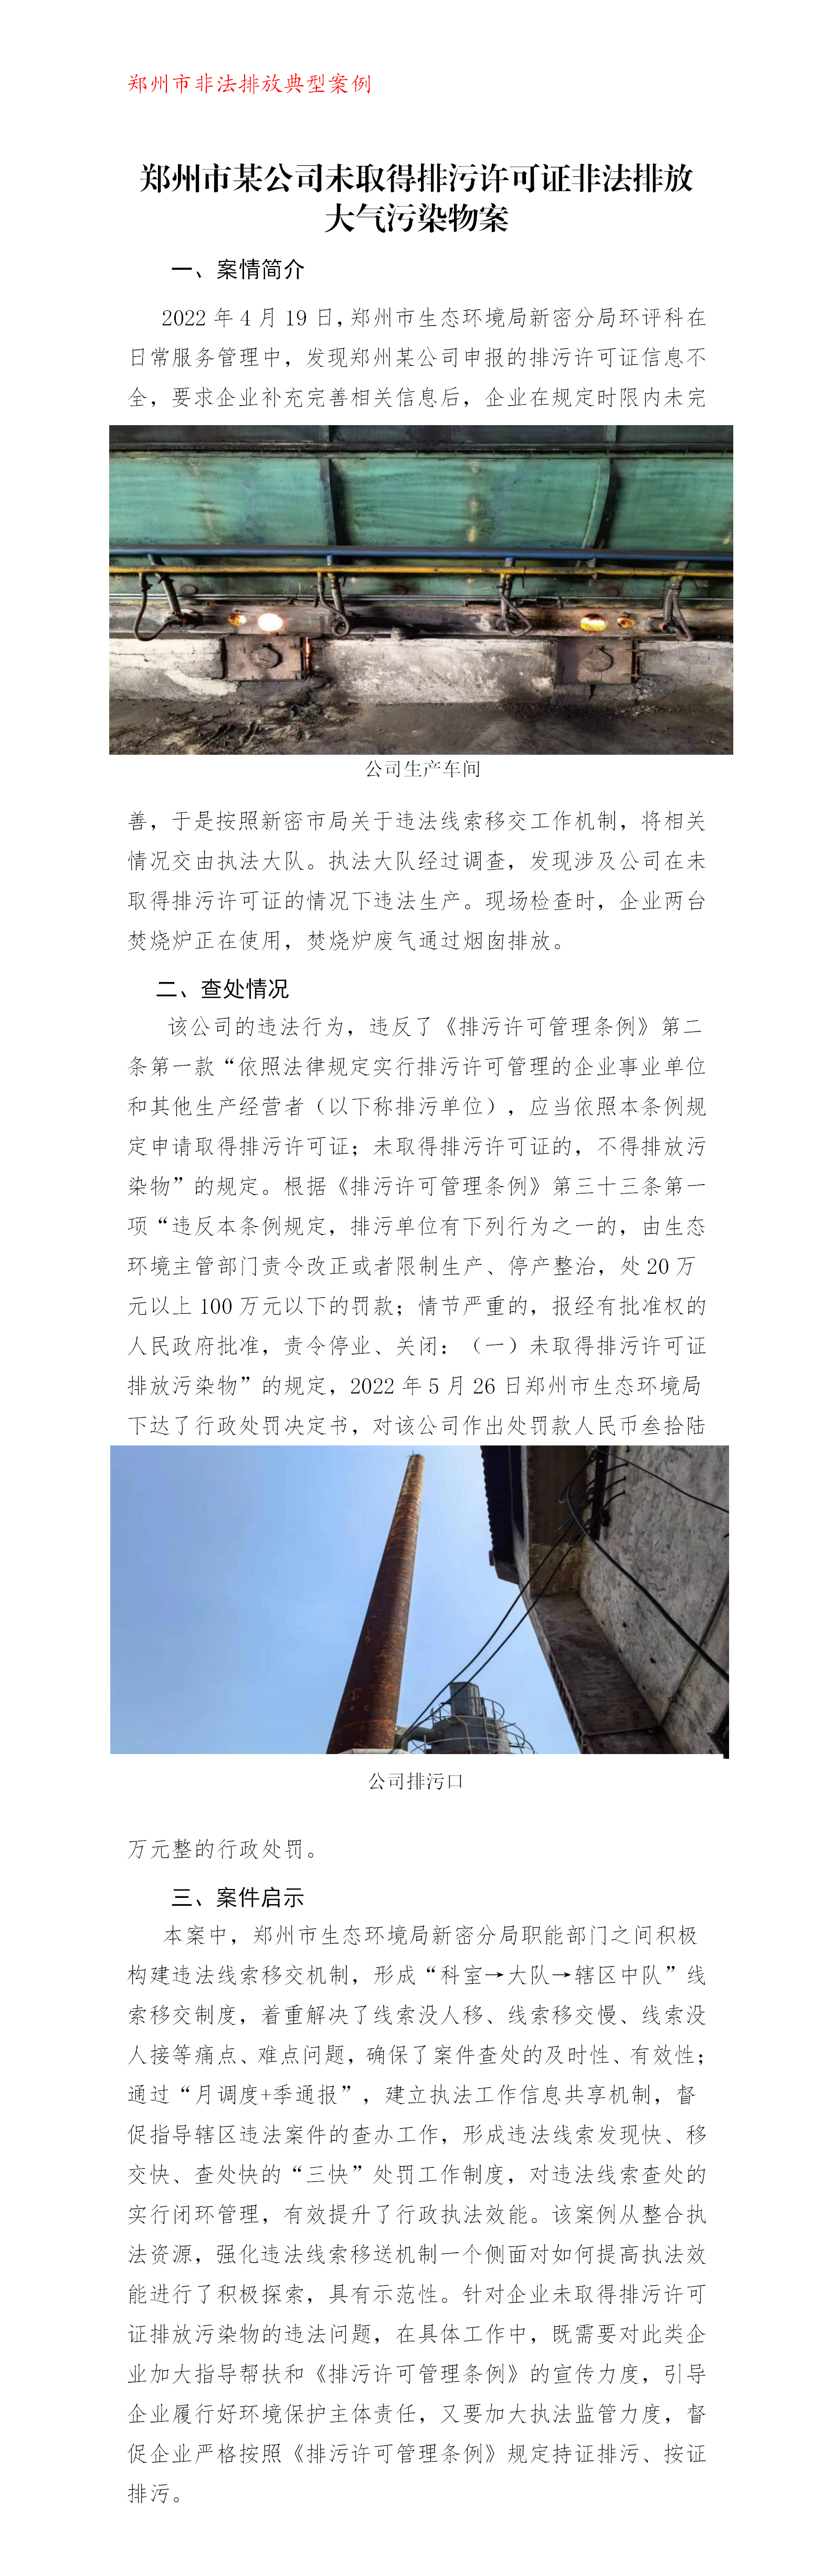 20221122--非法排放--郑州市某公司未取得排污许可证非法排放大气污染物案_01.png